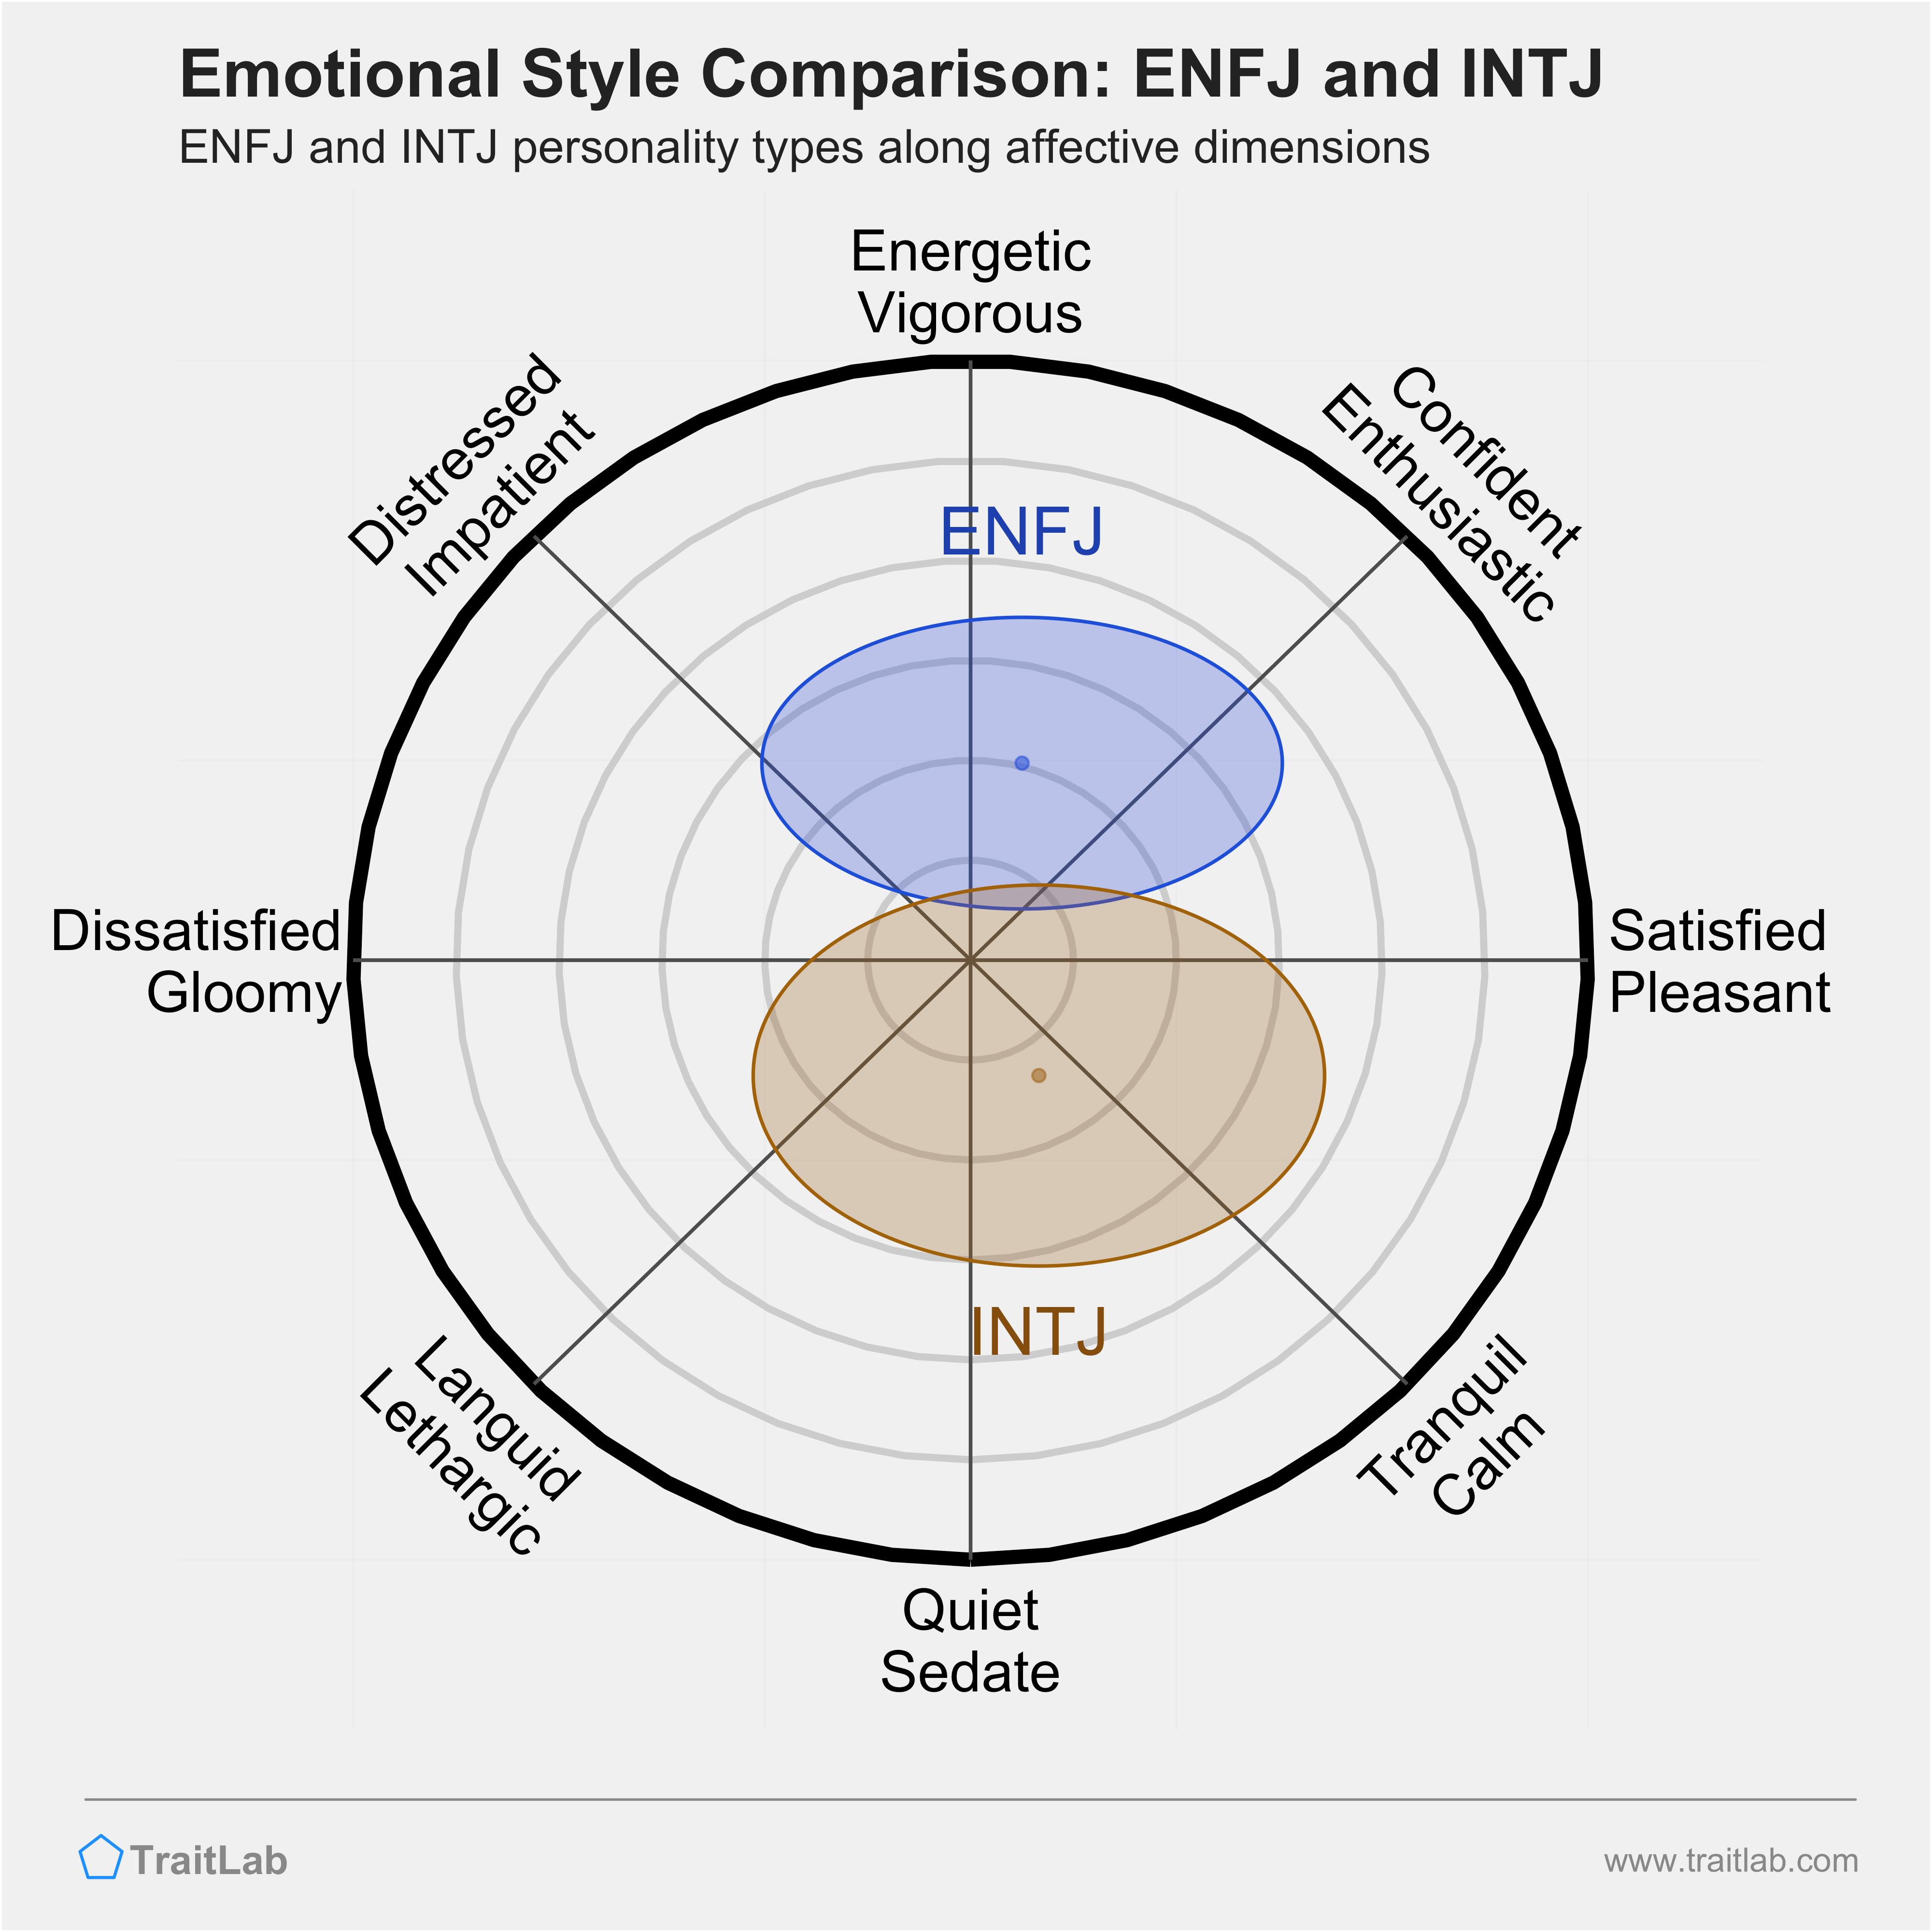 ENFJ and INTJ comparison across emotional (affective) dimensions